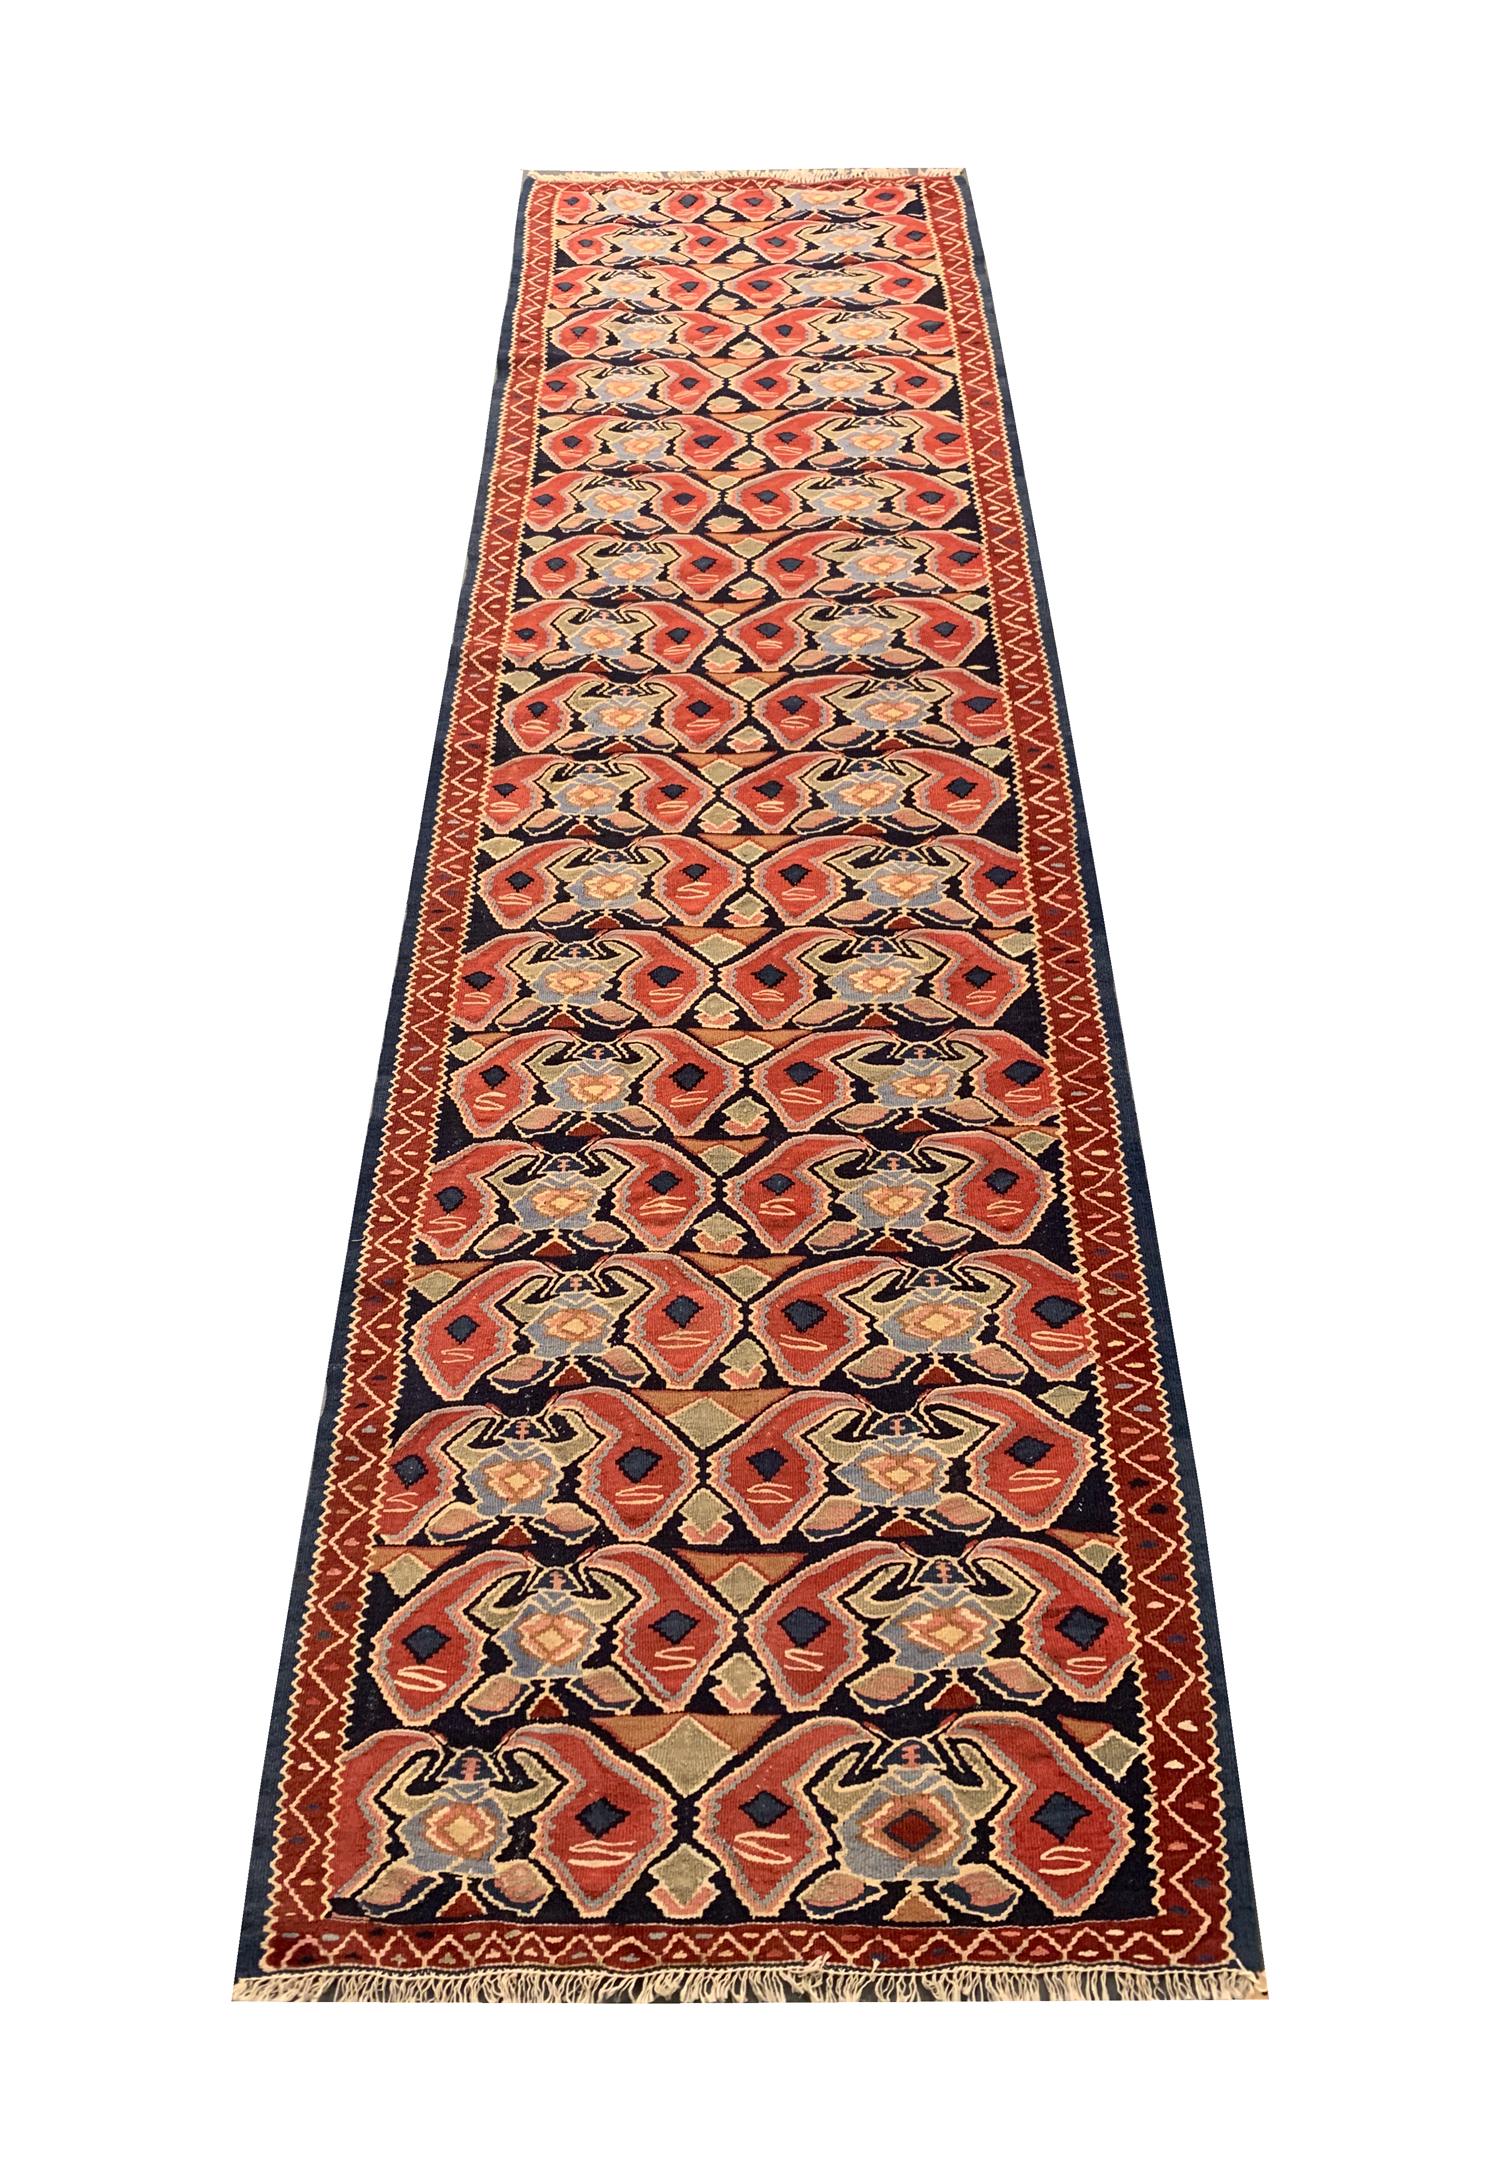 Dieser elegante flachgewebte Läufer ist ein hervorragendes Beispiel für kaukasische Kelims aus den 1950er Jahren. Das Design zeigt ein sich wiederholendes All-Over-Muster, das mit Akzenten in Rot, Beige, Blau und Grün gewebt ist. Das Design und die